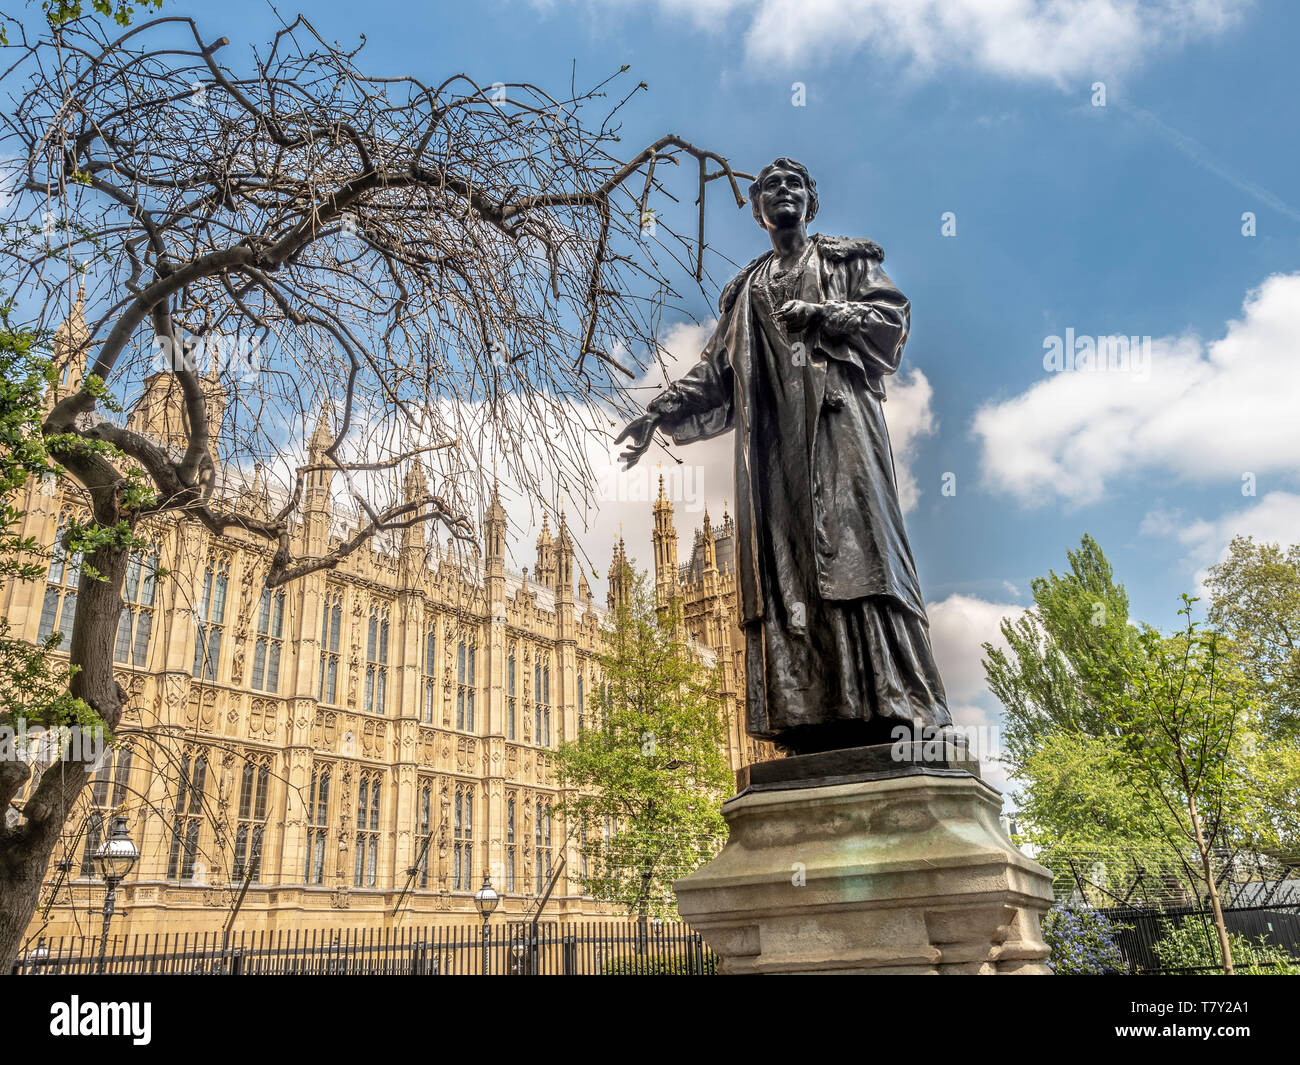 Bronzestatue der Emmeline Pankhurst von Arthur George Walker in den Victoria Tower Gardens, Westminster, London, Großbritannien. Vorgestellt im Jahr 1930. Stockfoto